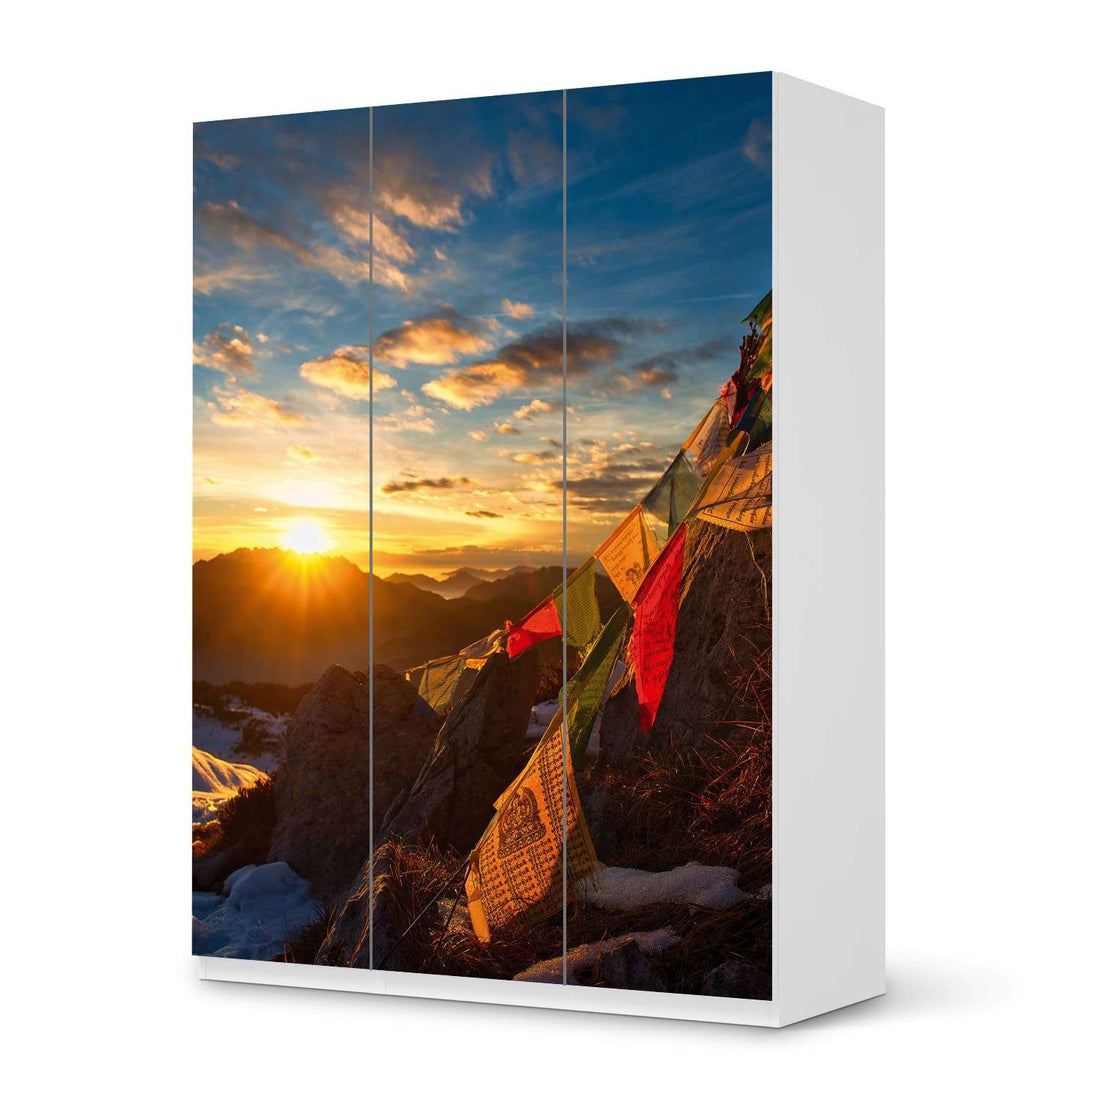 Folie für Möbel Tibet - IKEA Pax Schrank 201 cm Höhe - 3 Türen - weiss